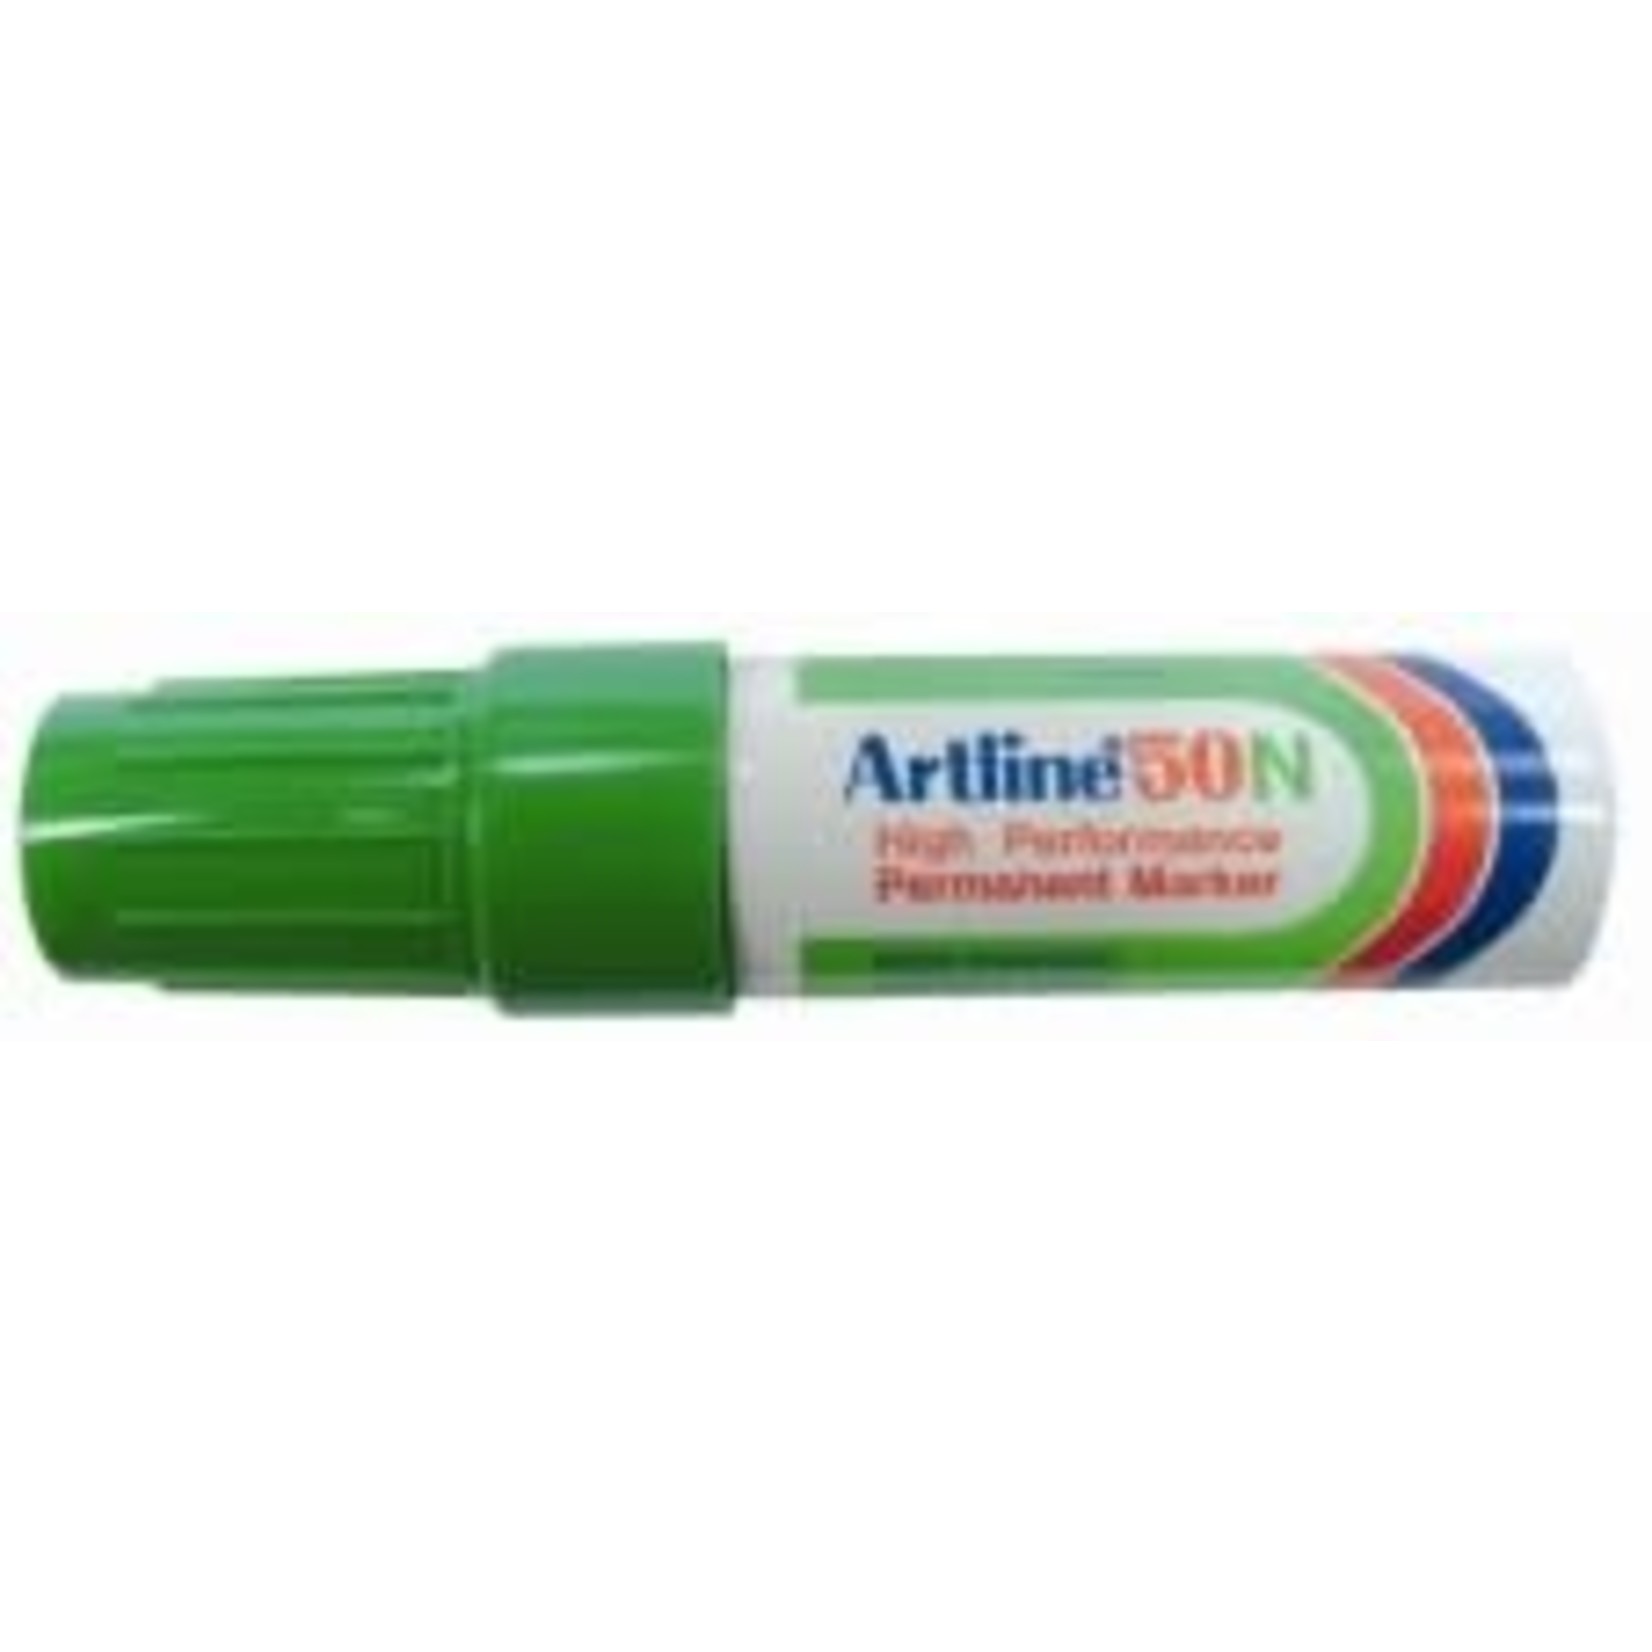 artline Permanente Marker "50N" schuine punt, 3.0-6.0mm - Groen